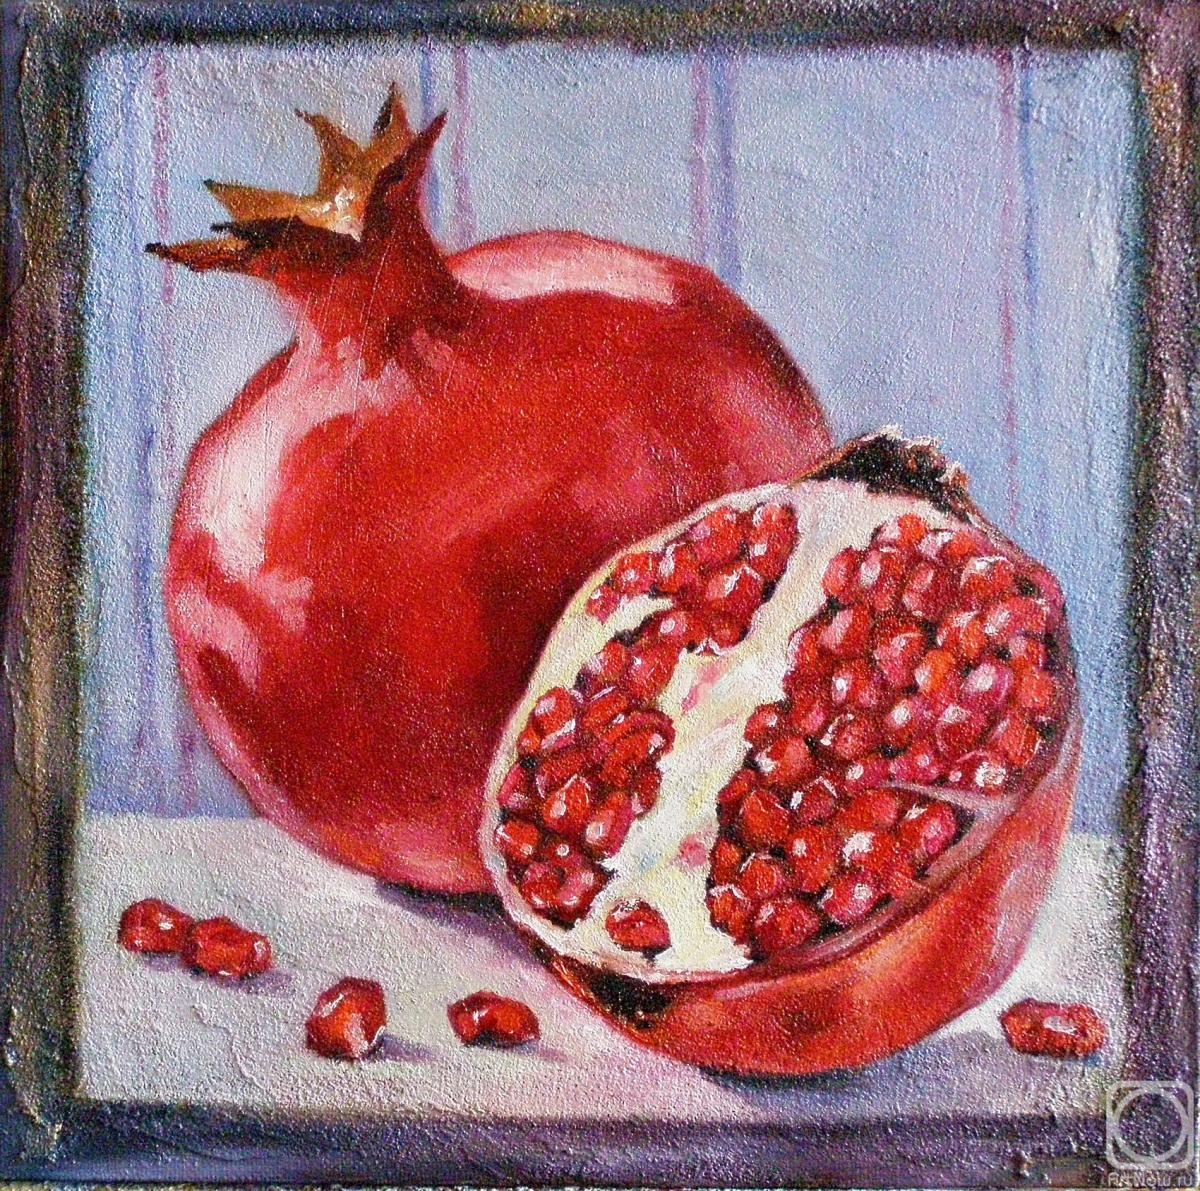 Mishchenko-Sapsay Svetlana. One and a half pomegranate